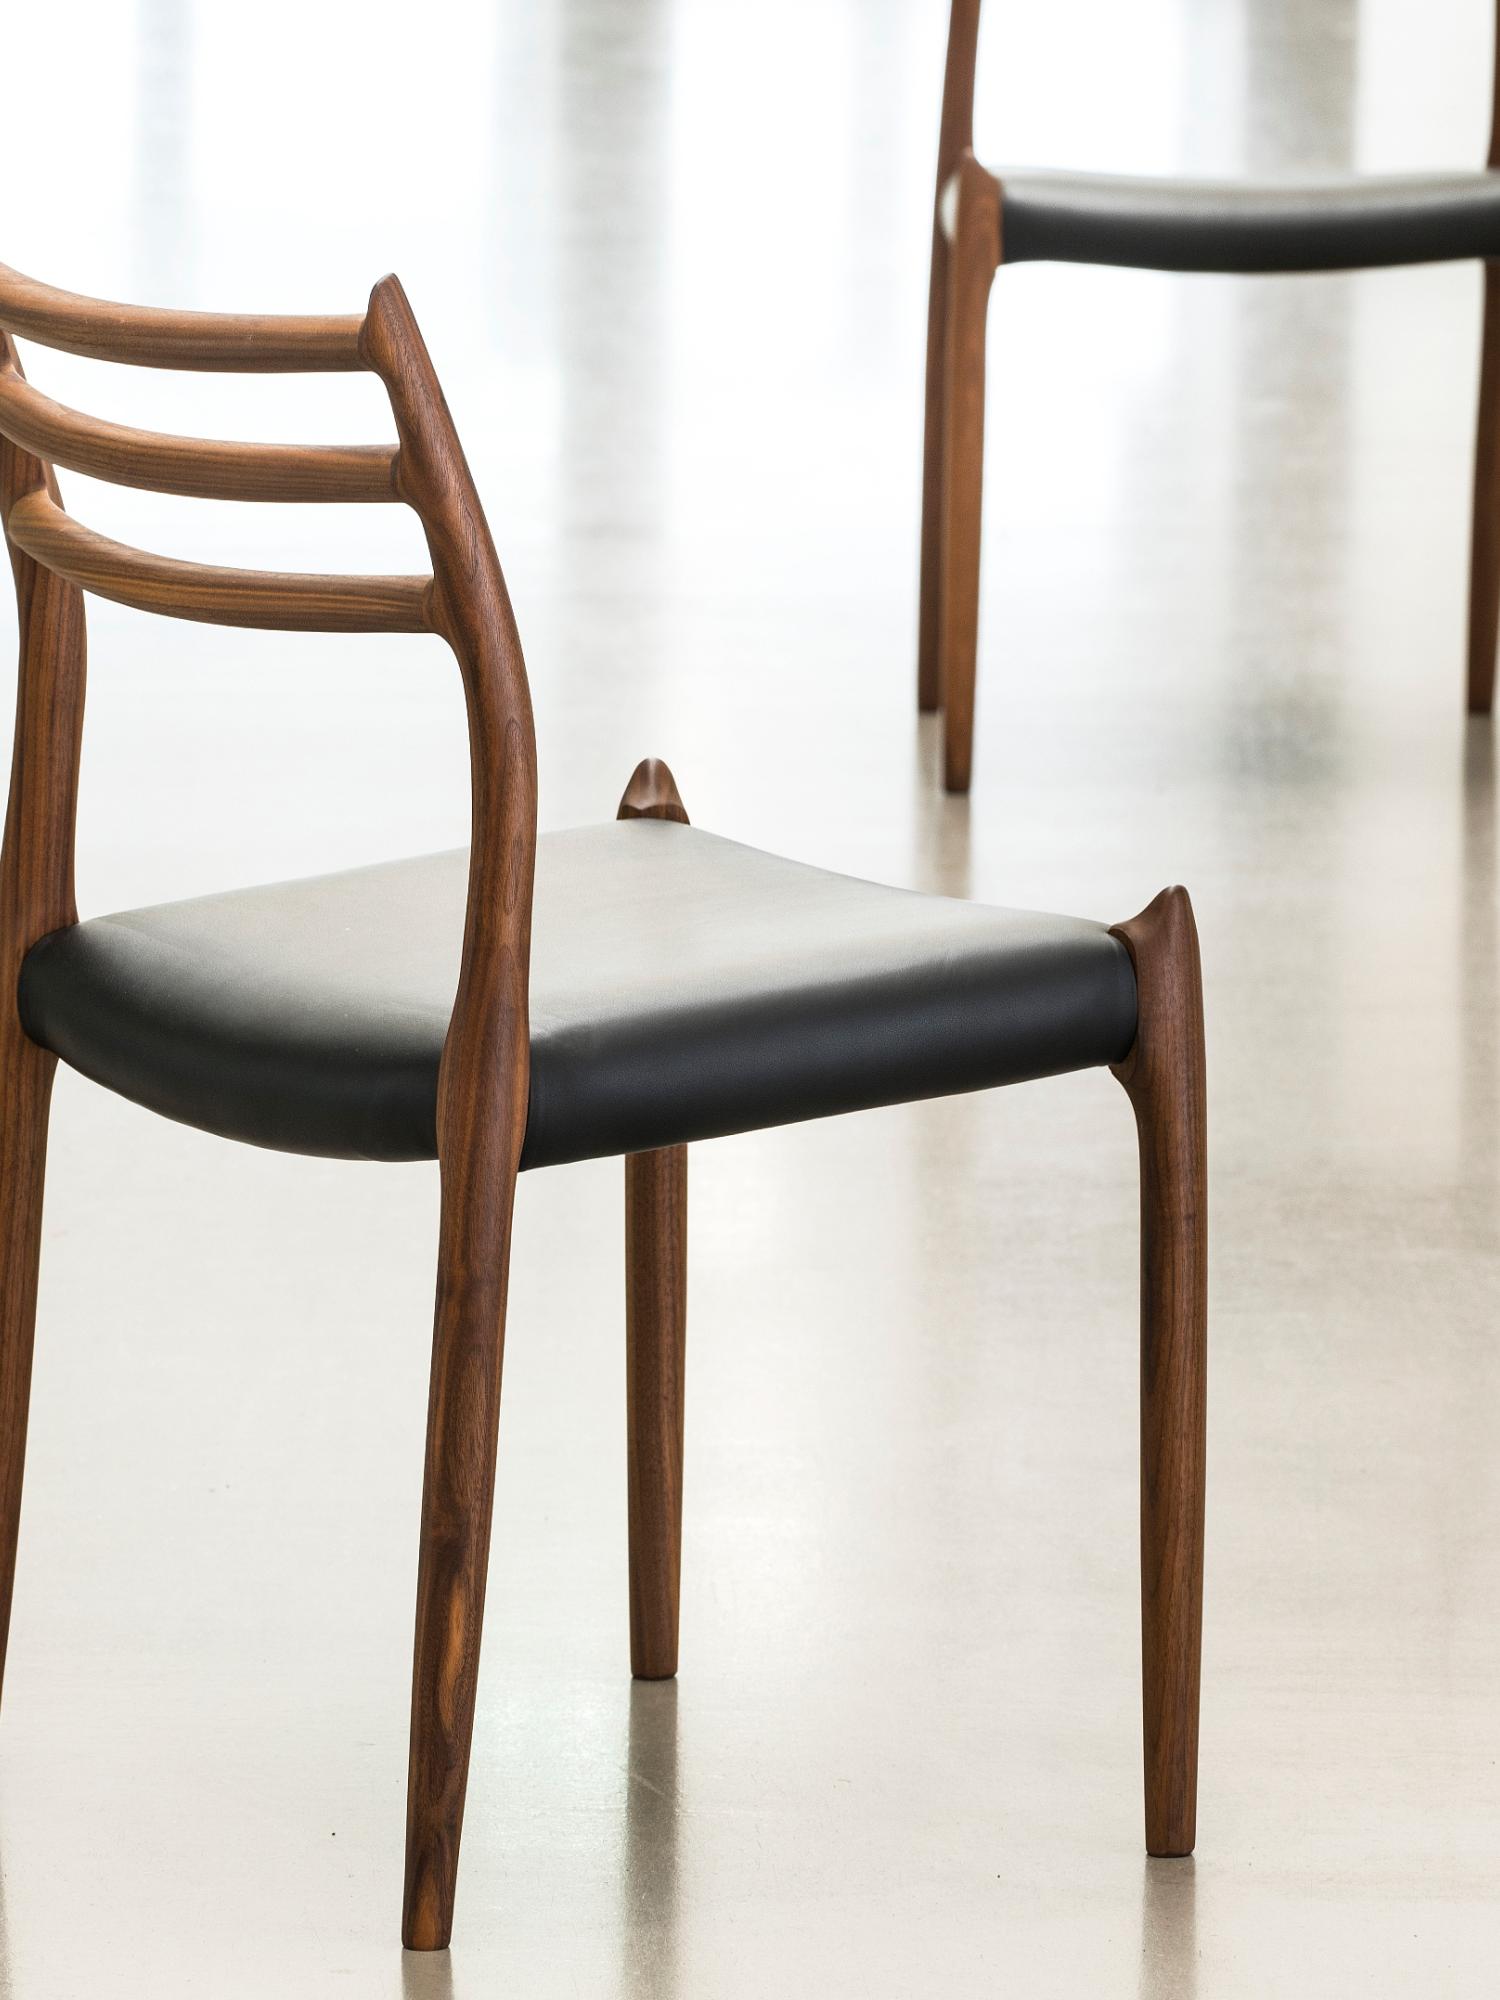 Moller handgemaakte stoelen door villa interno Kortrijk heule